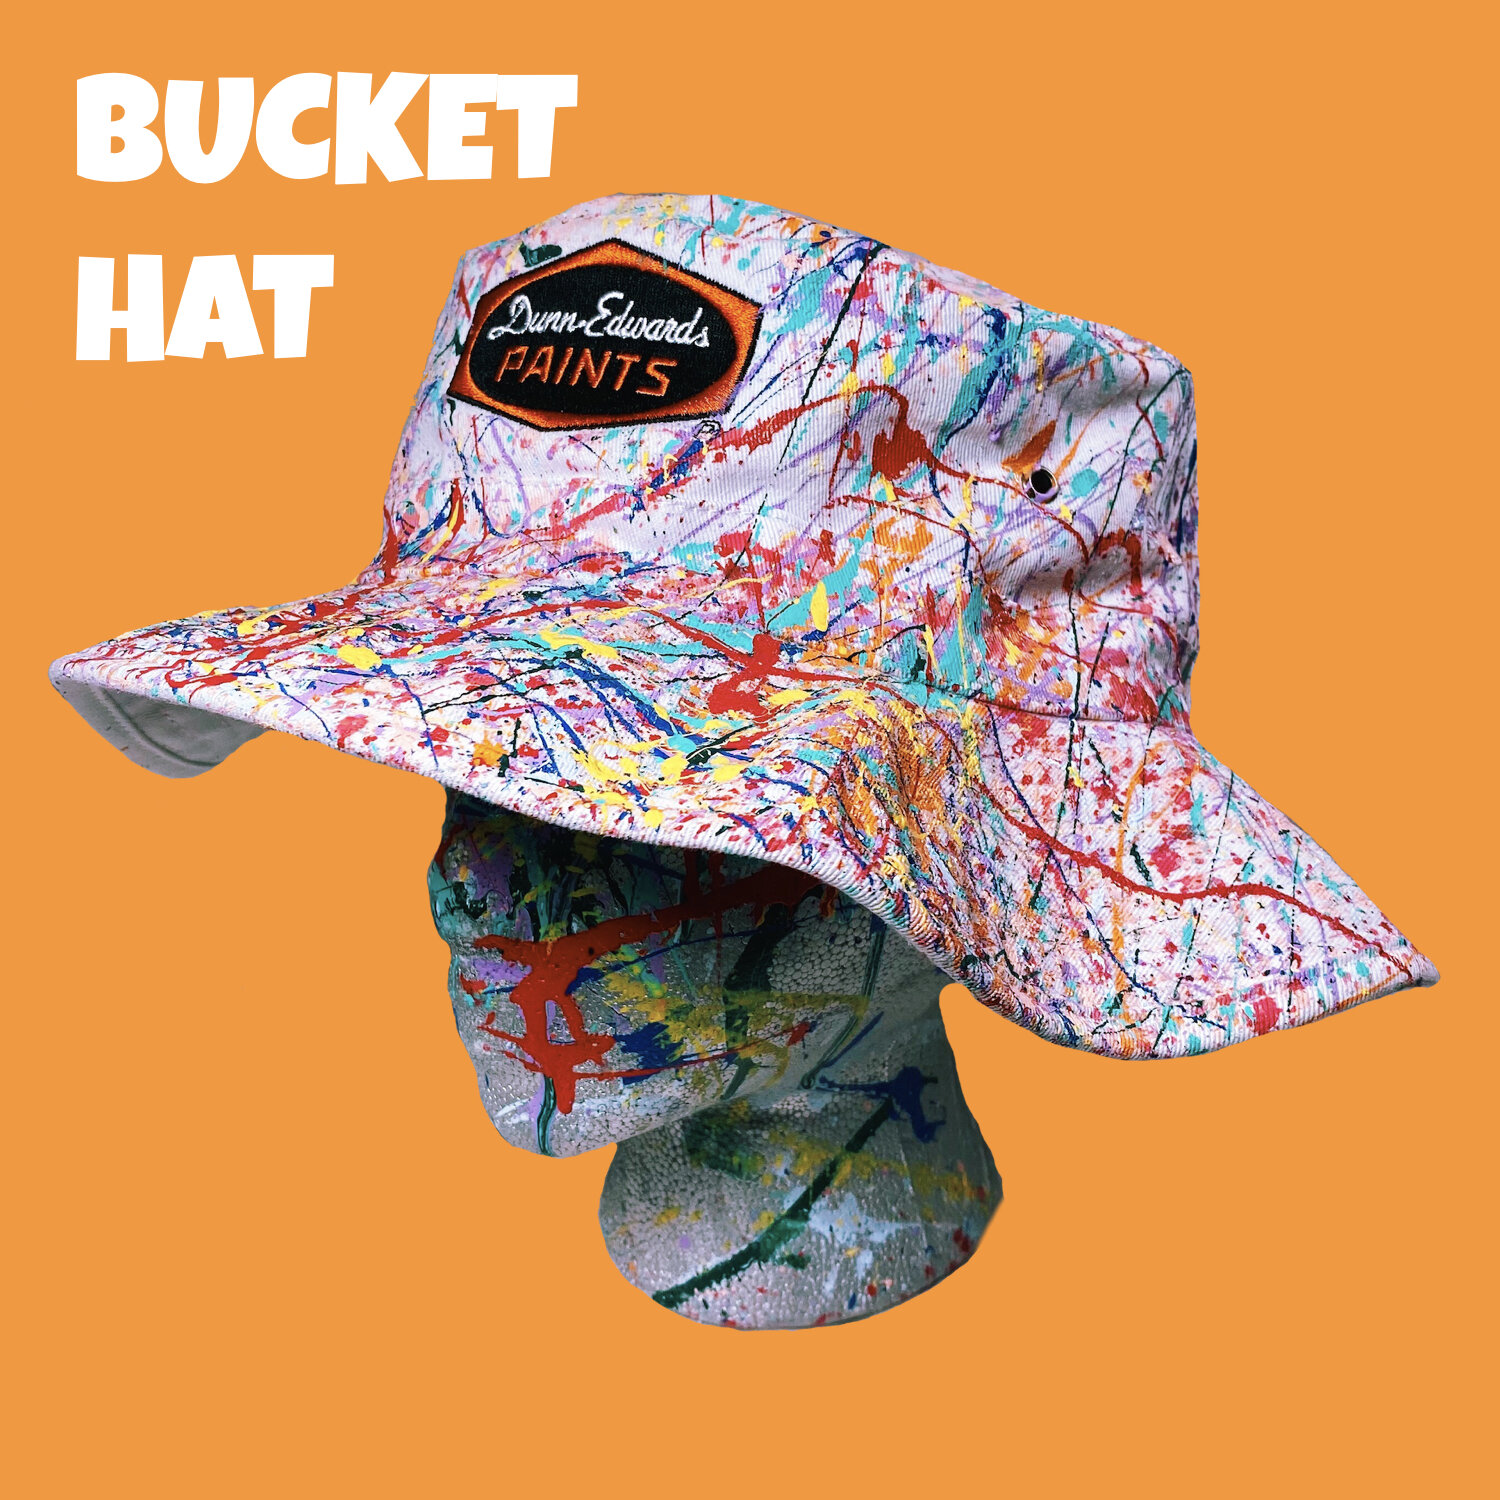 bucket-hat-superbloom-paint-splatter-dunn-edwards.jpeg